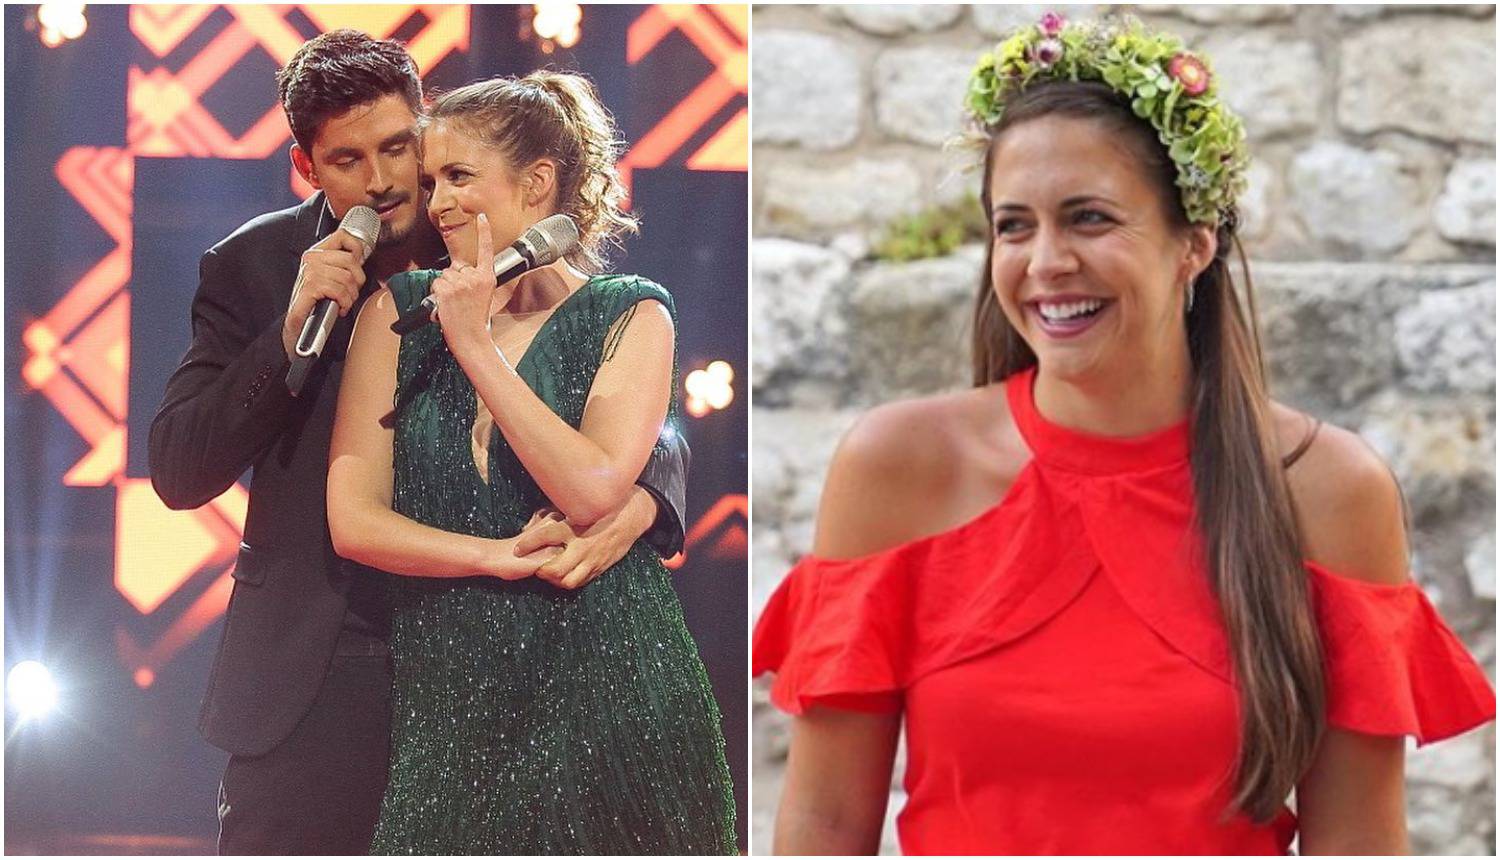 Ashley Colburn dobila Emmyja za film o Hrvatskoj, a s Bojanom 'rasturila' u 'Zvijezde pjevaju'